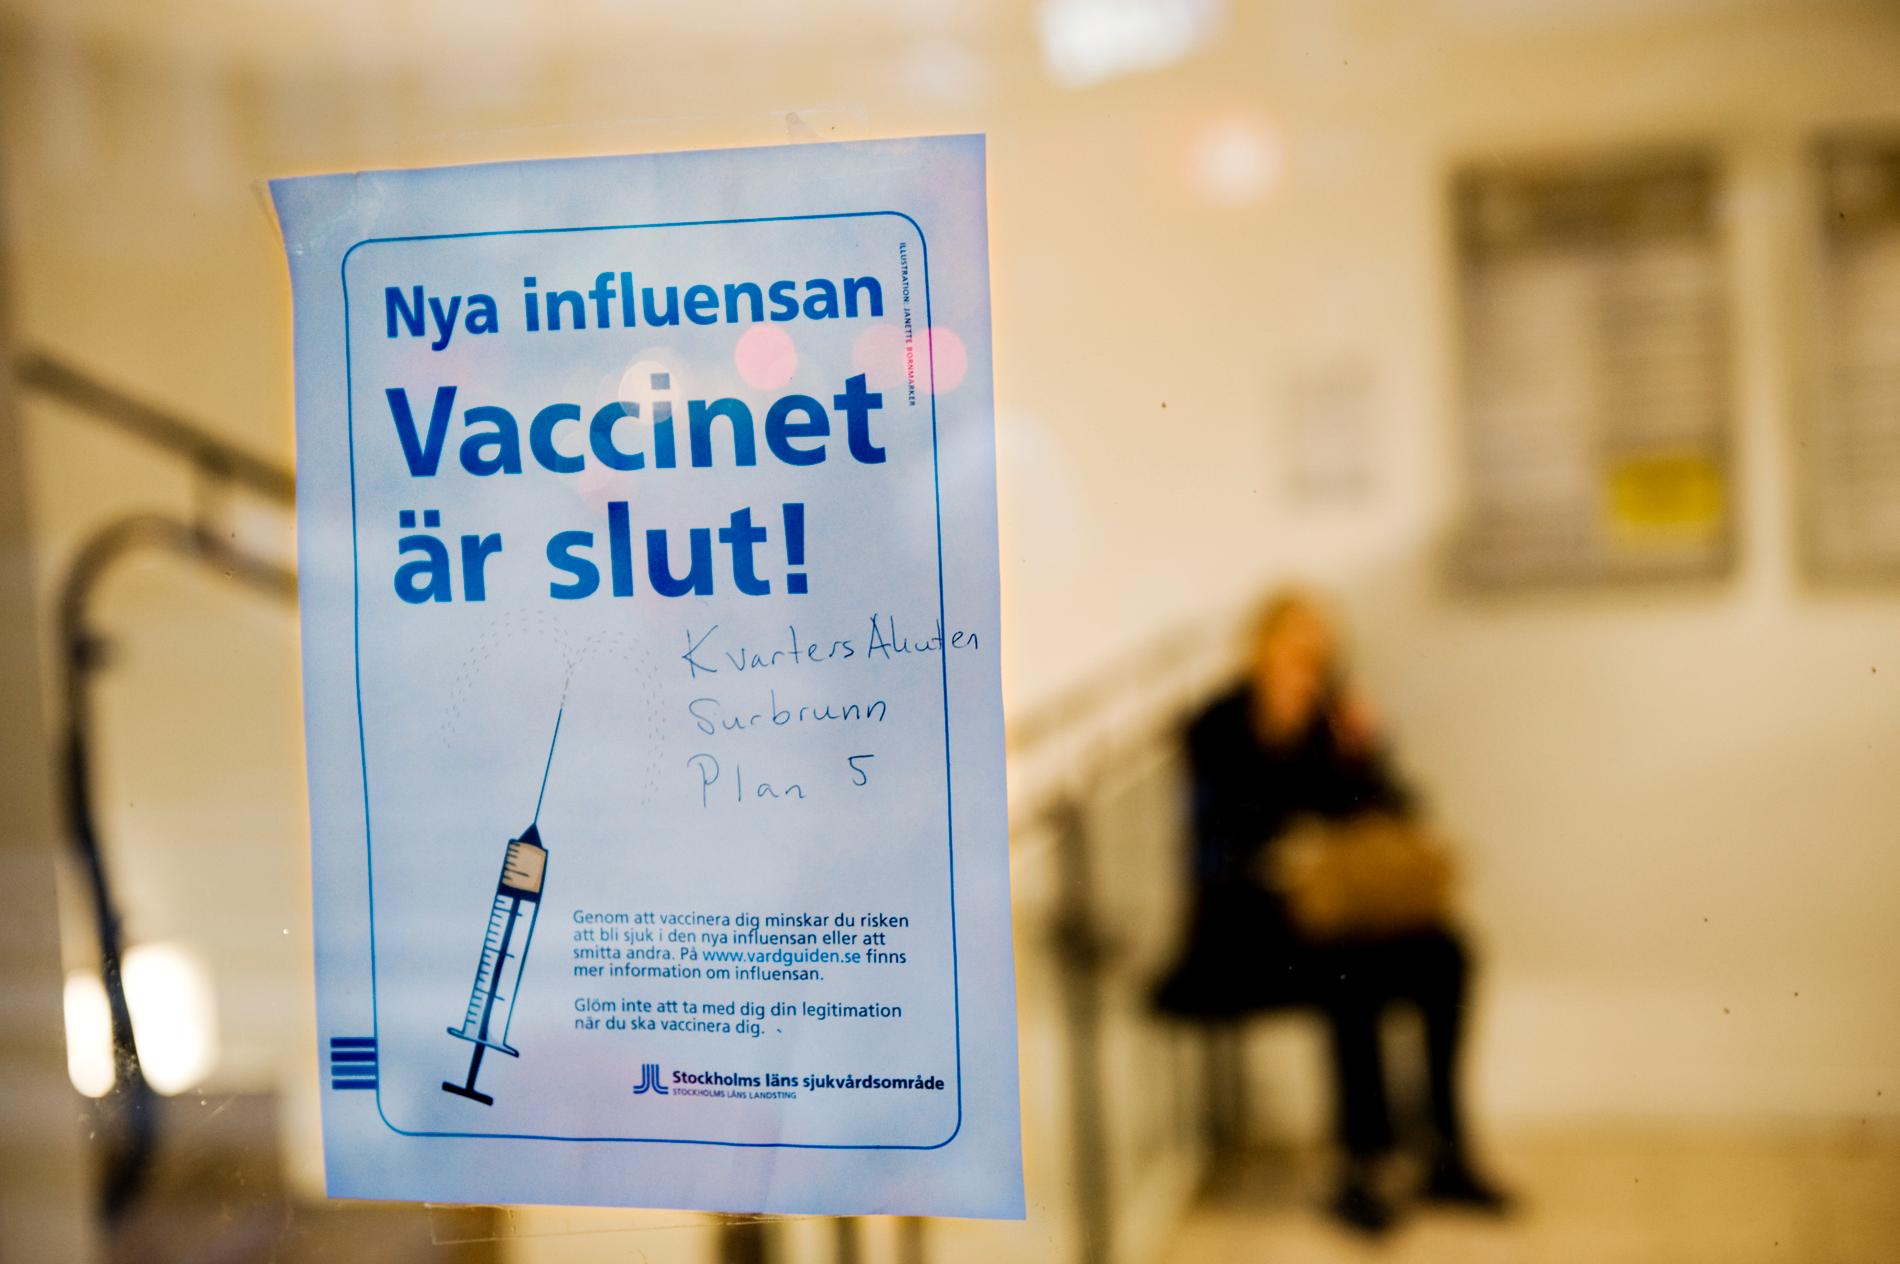 Trycket på vaccinationscentralerna var tidvis så hårt att vaccinet tog slut. Alla ville ha vaccinet för att skydda sig mot den nya influensan.